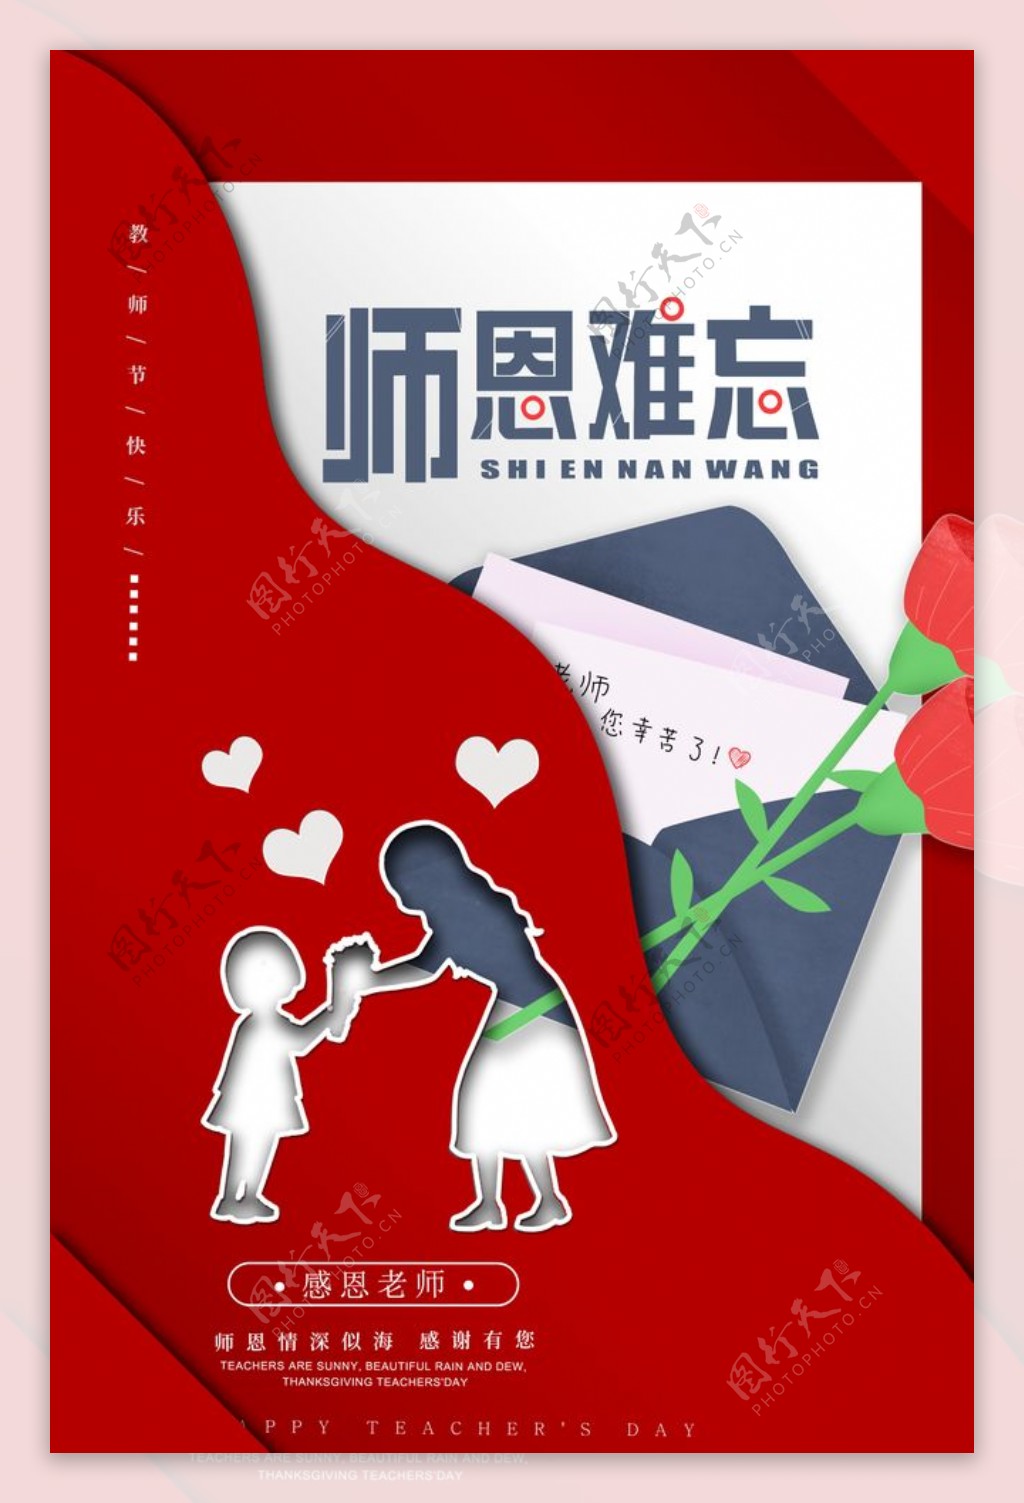 教师节传统节日宣传海报素材图片